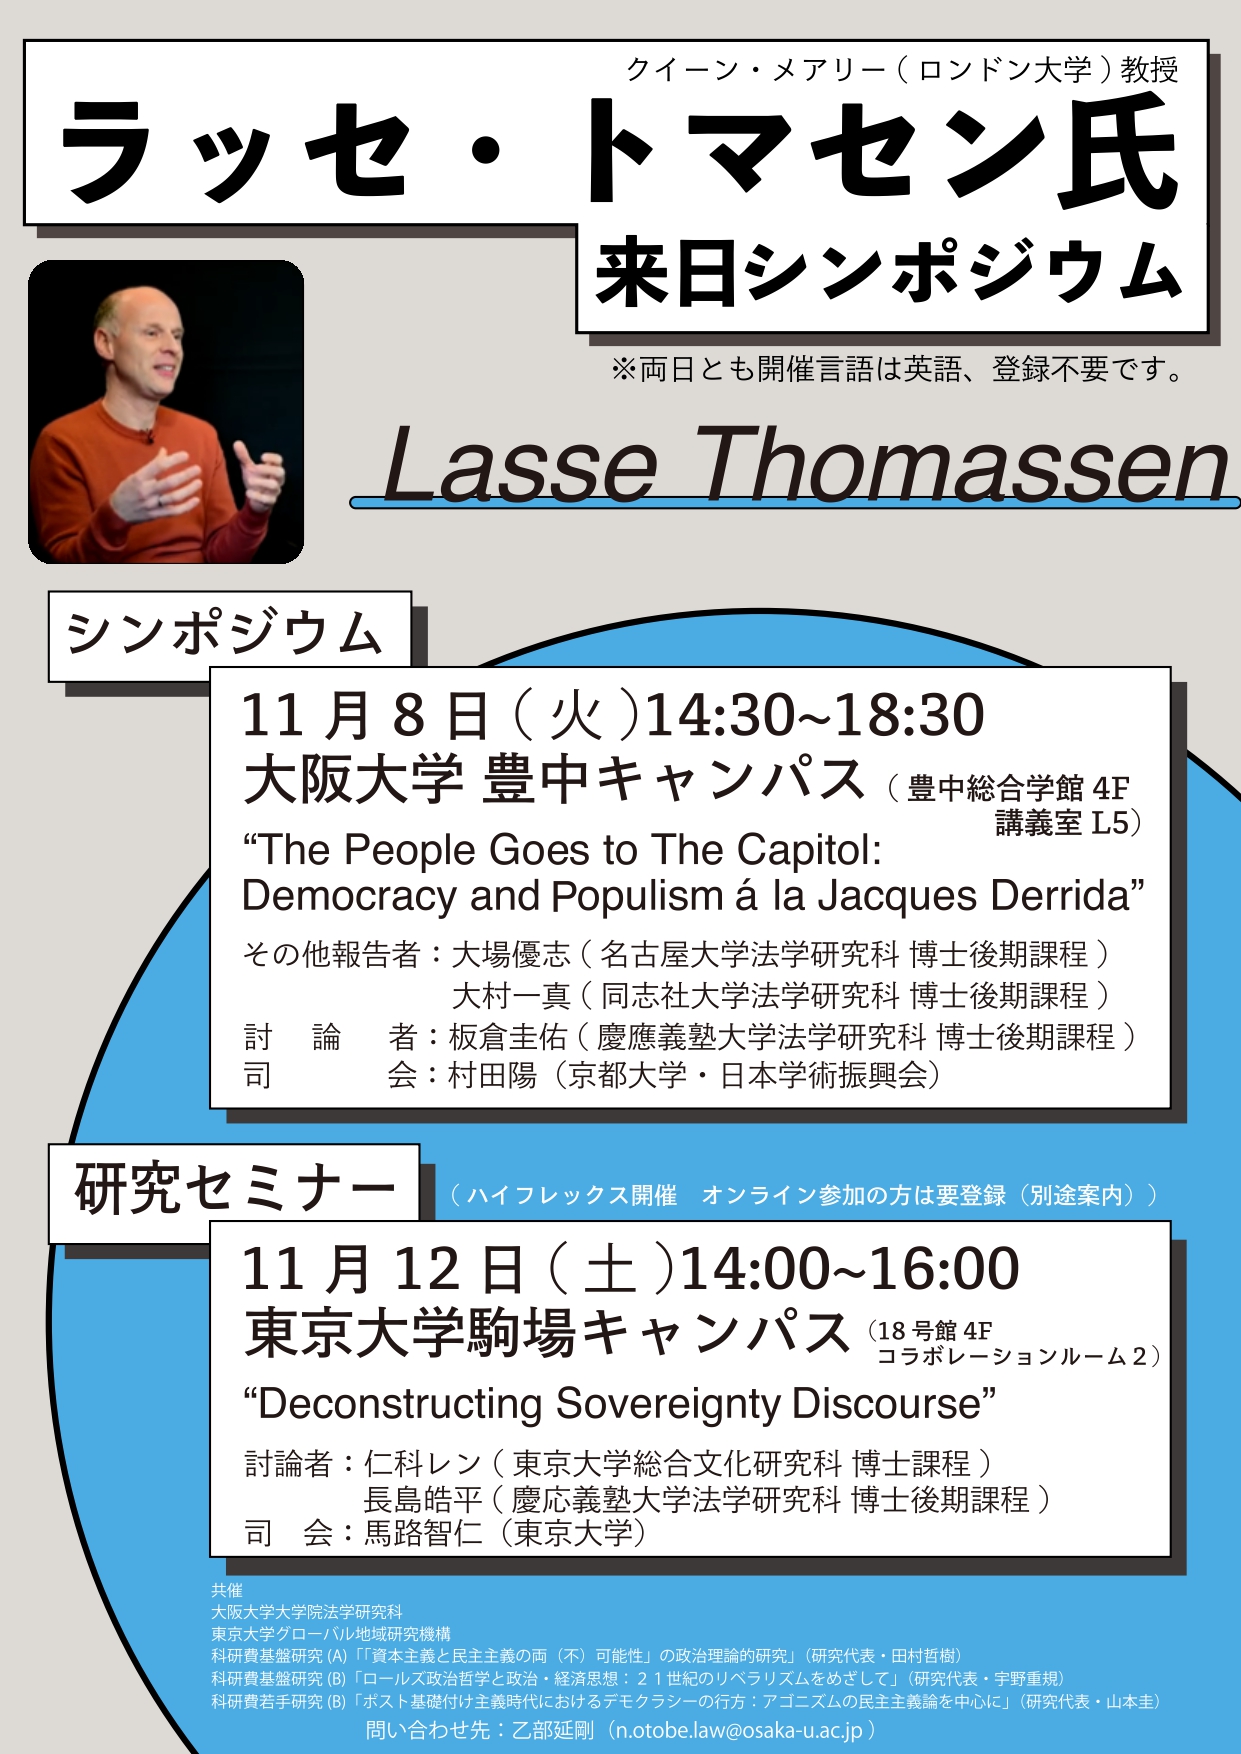 【研究セミナー】Lasse Thomassen, Deconstructing Sovereignty Discourse